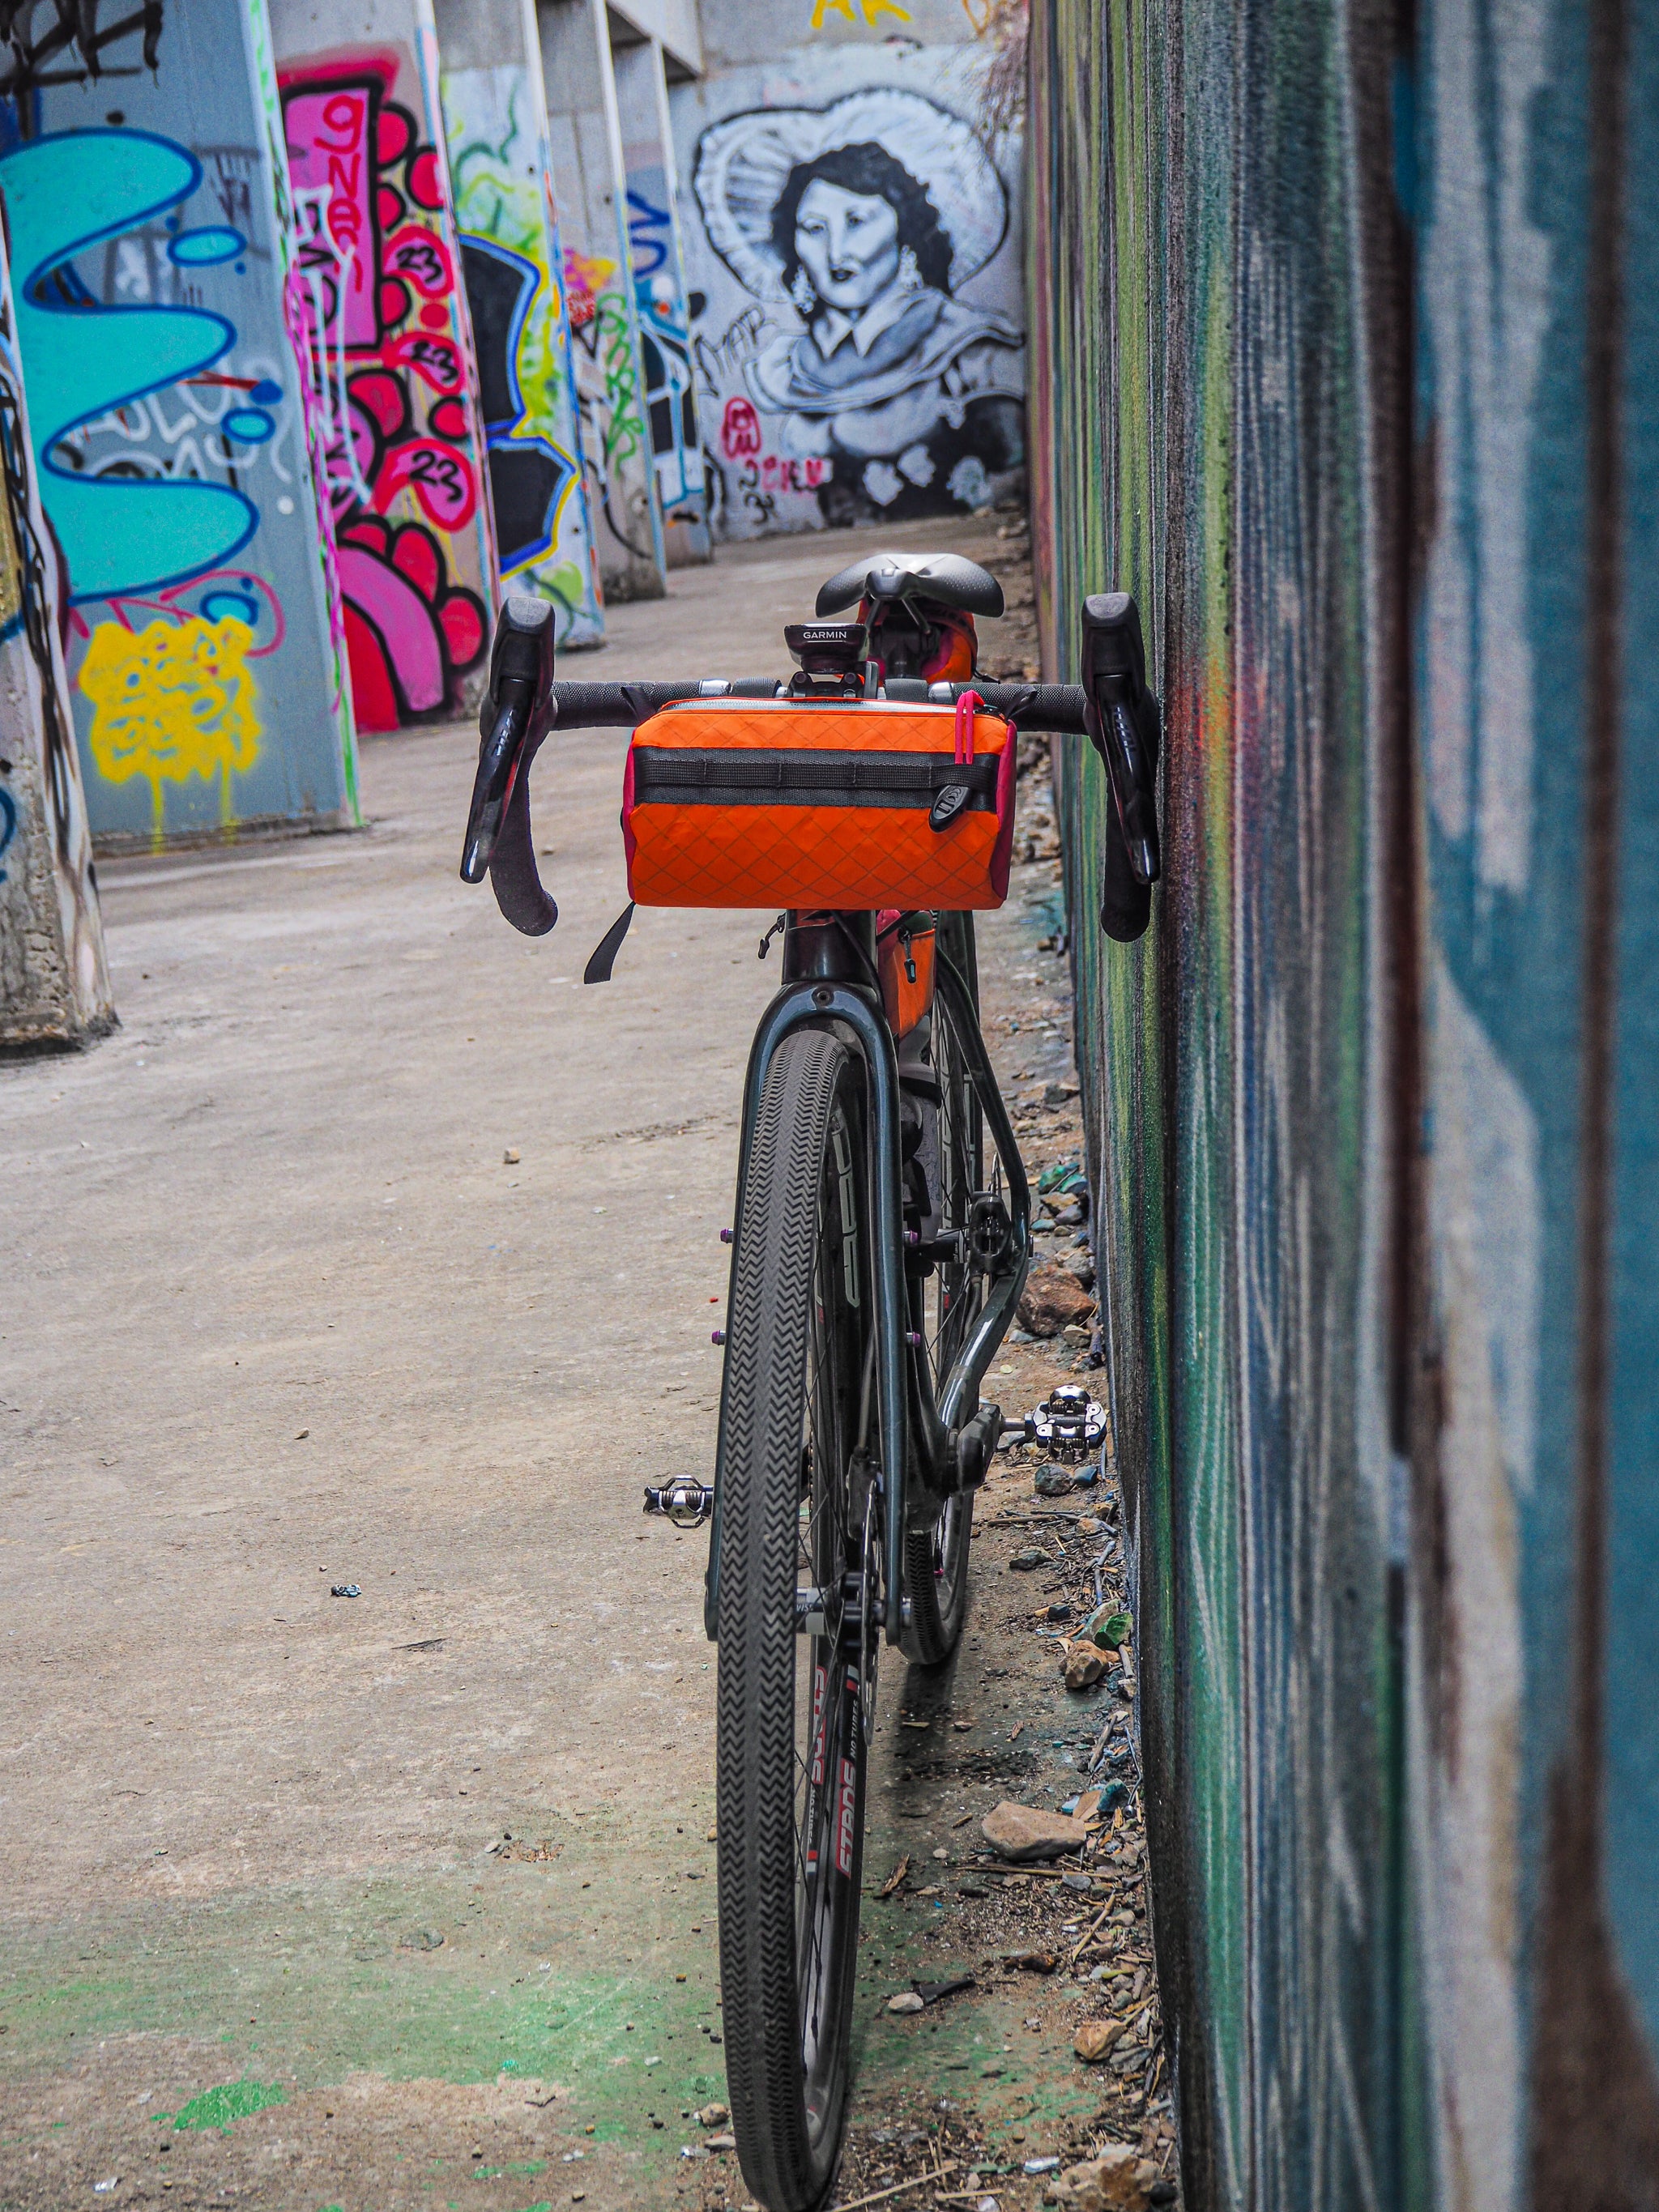 handlebar bag on bike